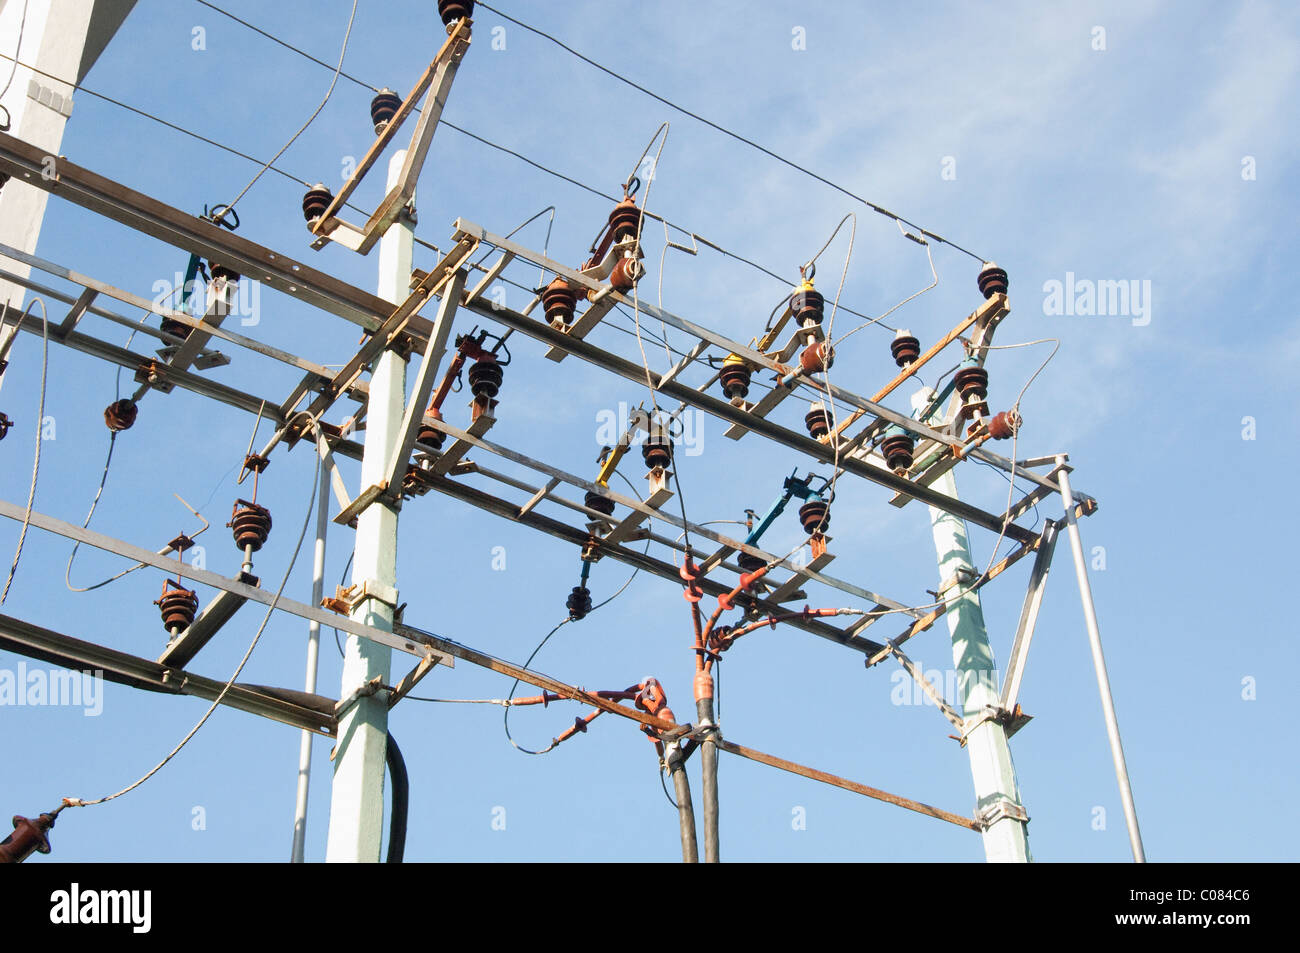 Basso angolo di visione di un traliccio di elettricità, Tirupati, Andhra Pradesh, India Foto Stock